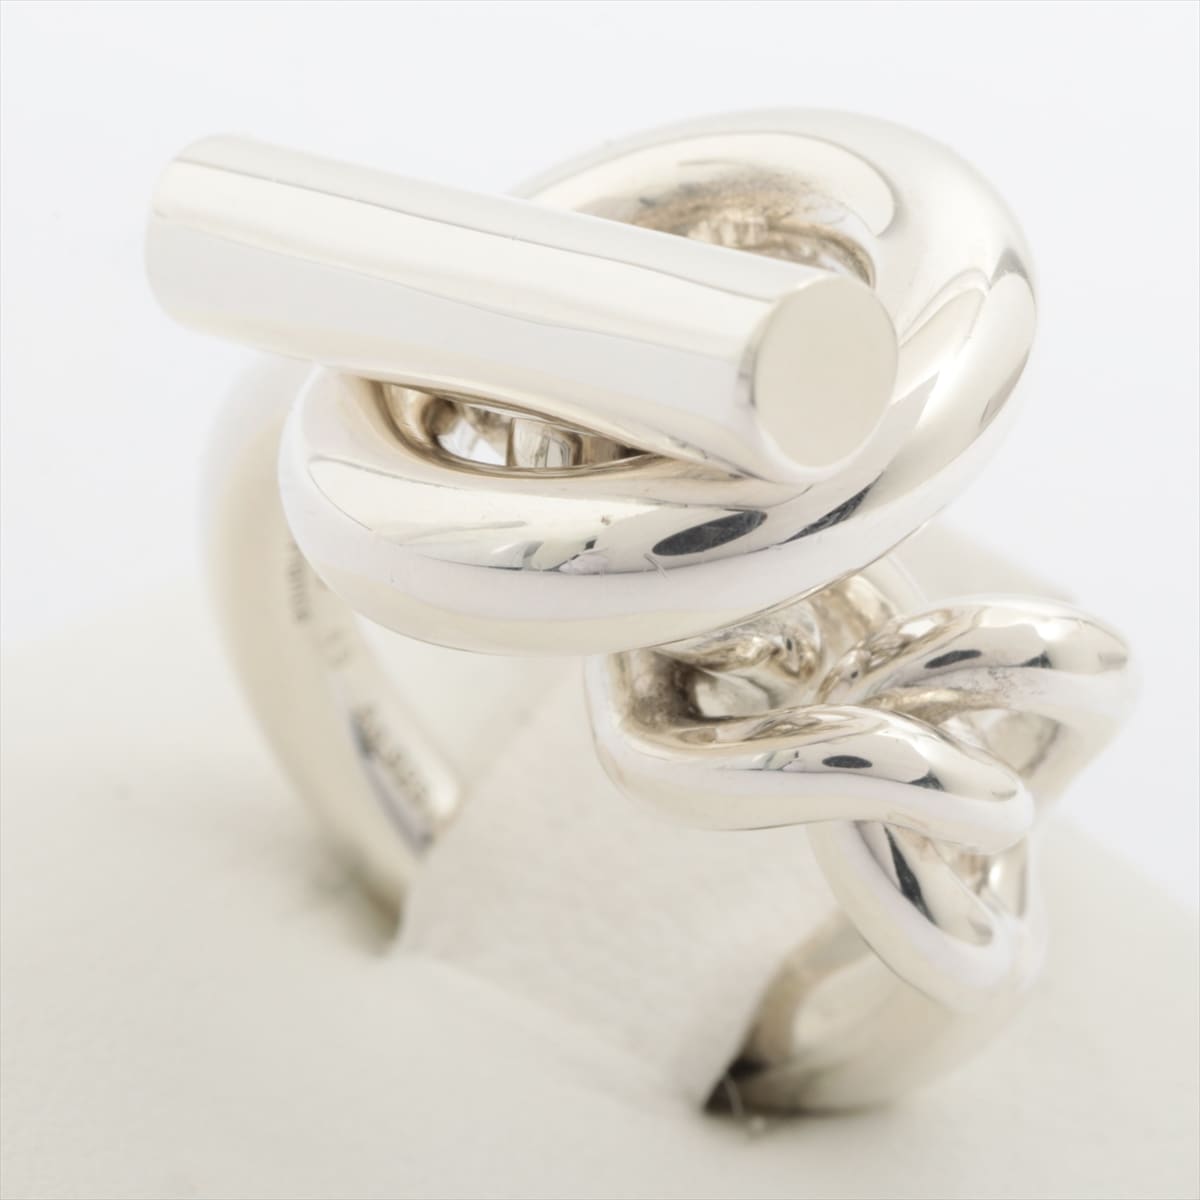 Hermès Croiset rings 925 15.8g Silver